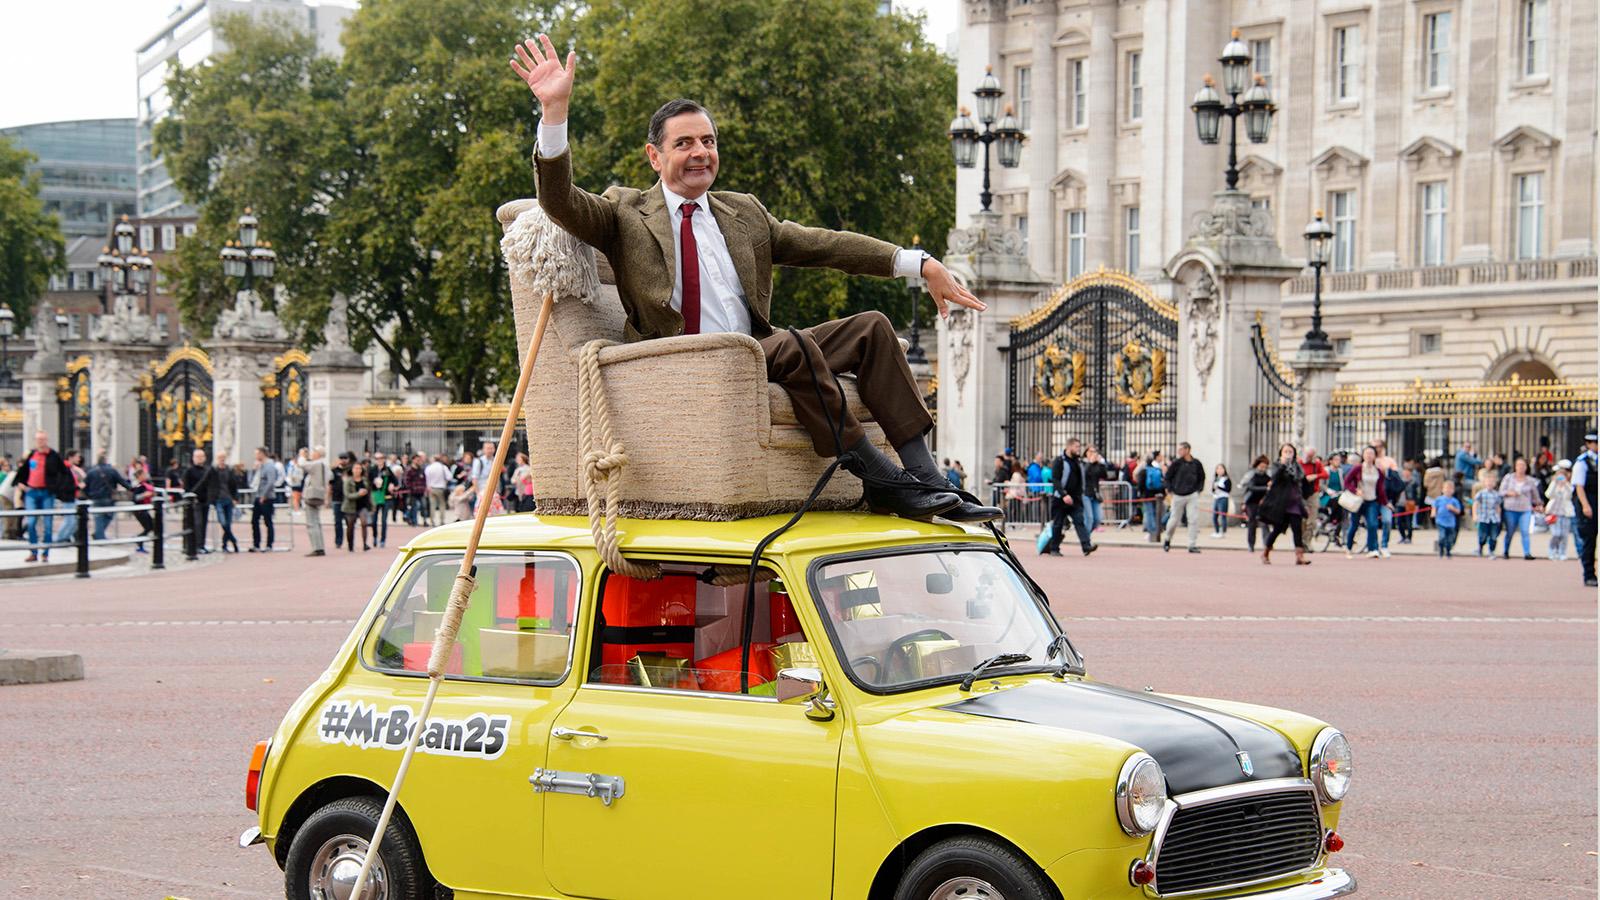 Mr Bean firade 25-års jubileum utanför Buckingham Palace 2015.